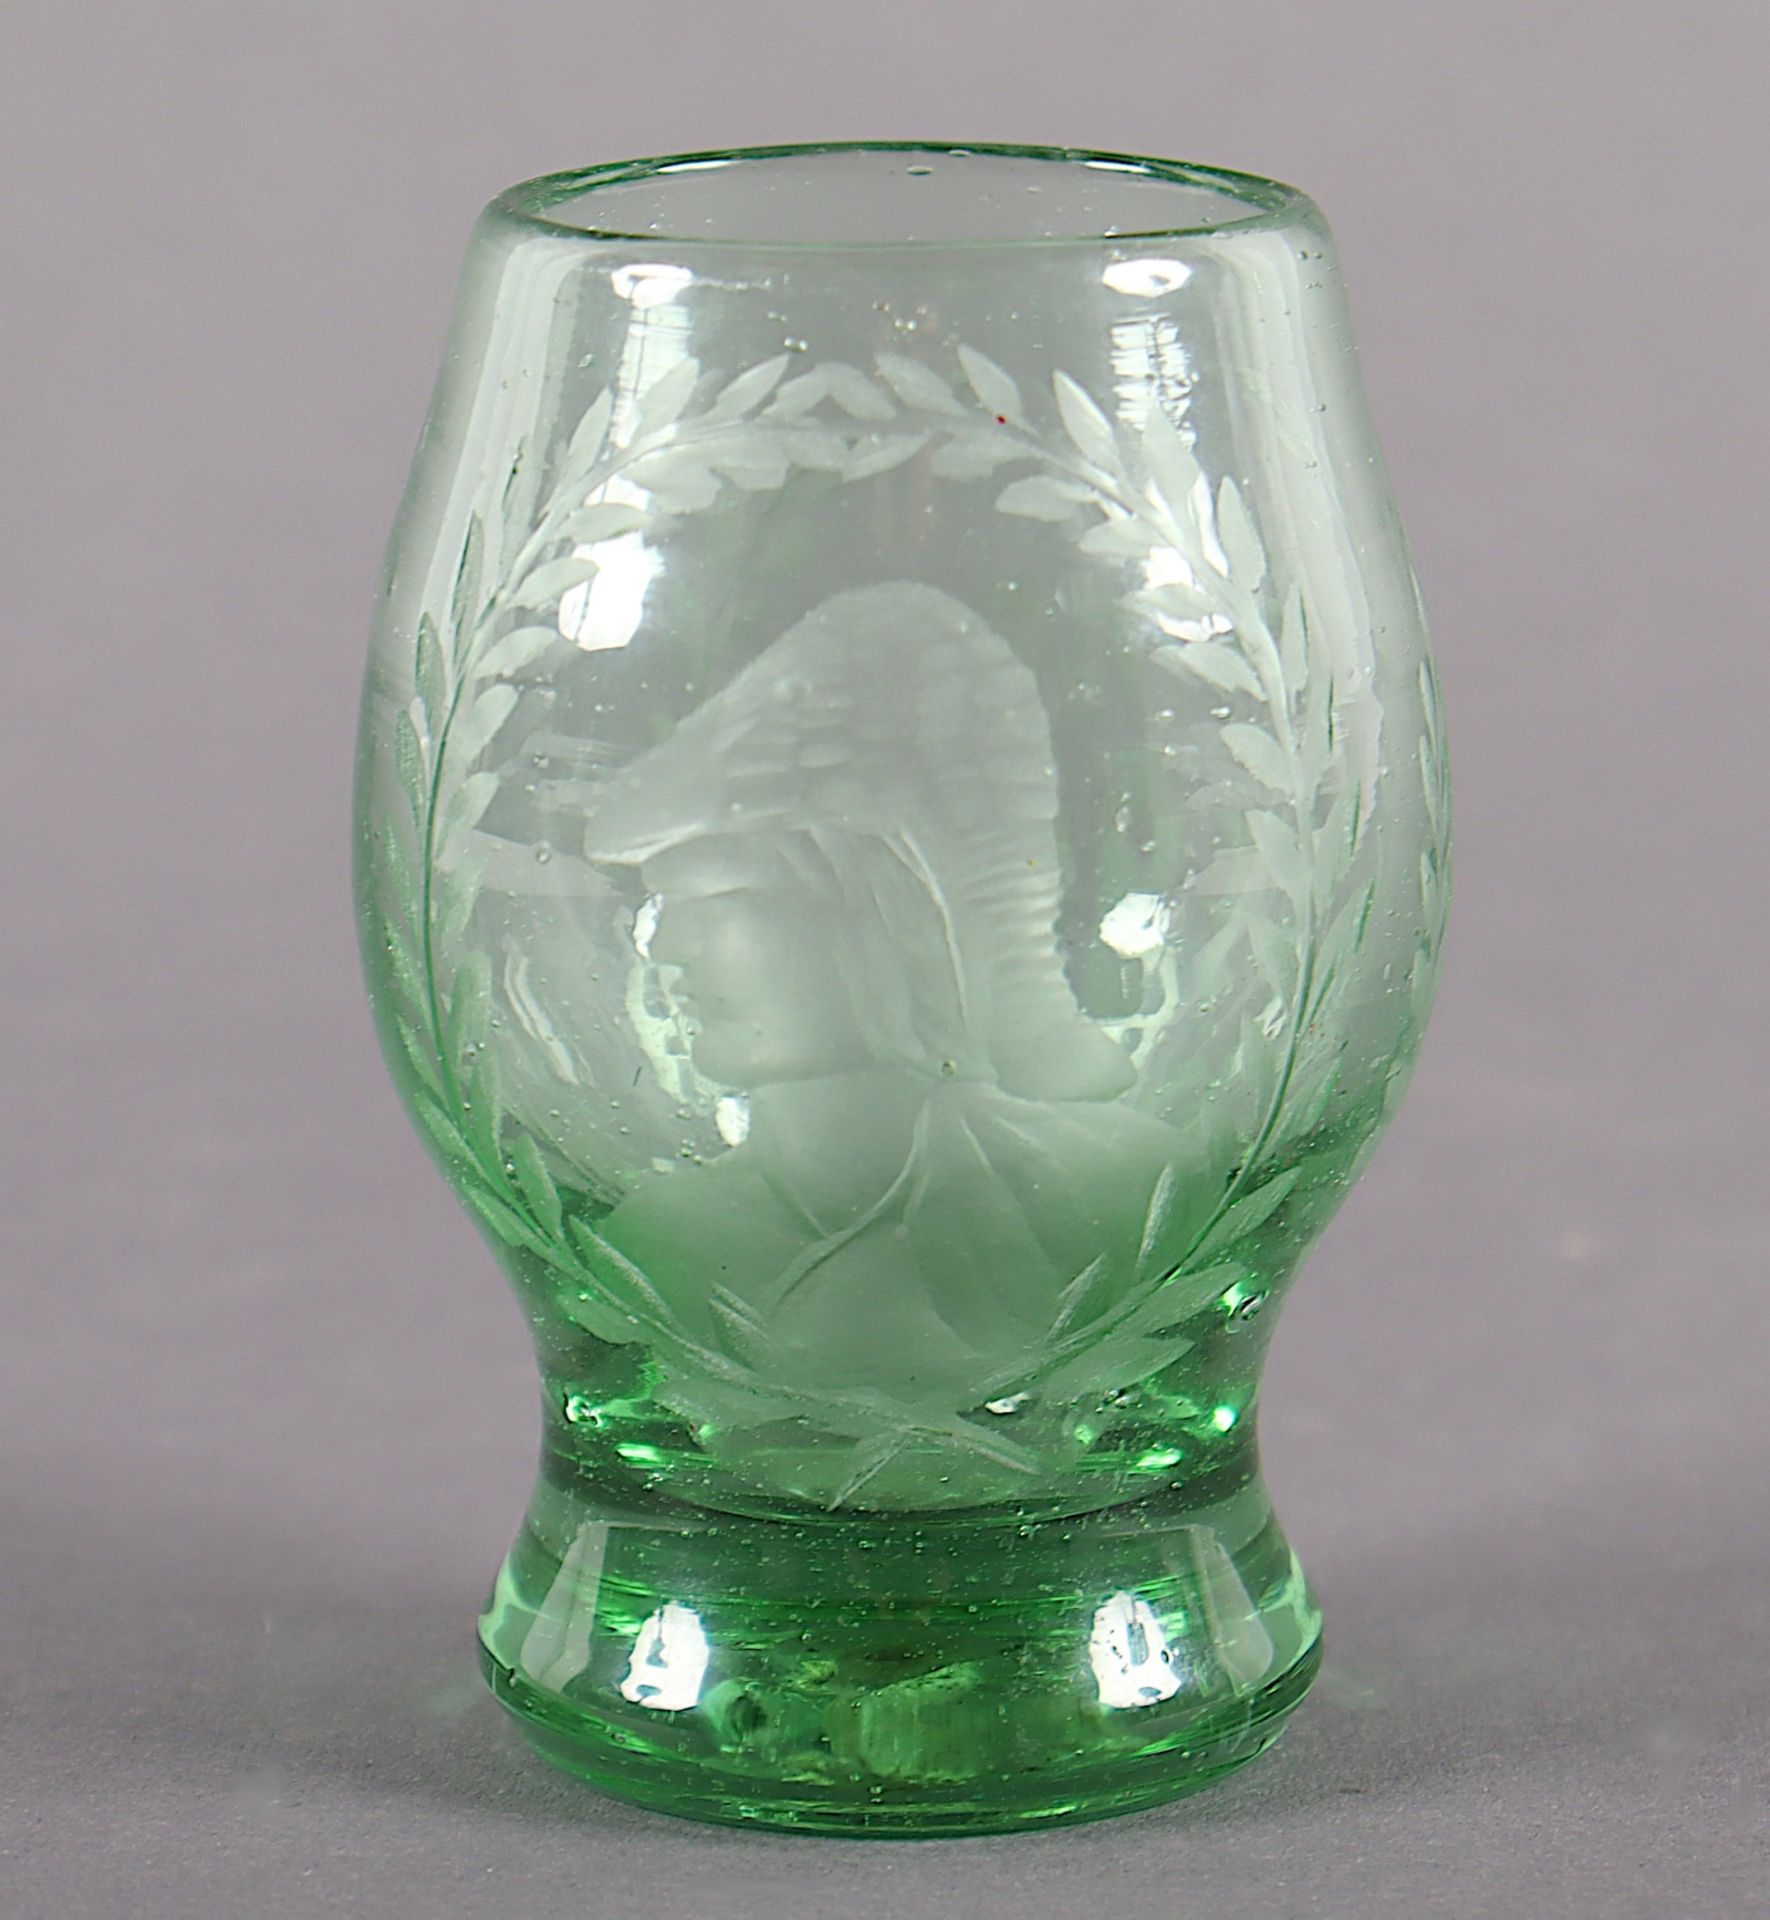 KLEINER BECHER, grünes Glas, Gravurdekor, Abriss, H 8,5, wohl DEUTSCH, datiert "1790" 